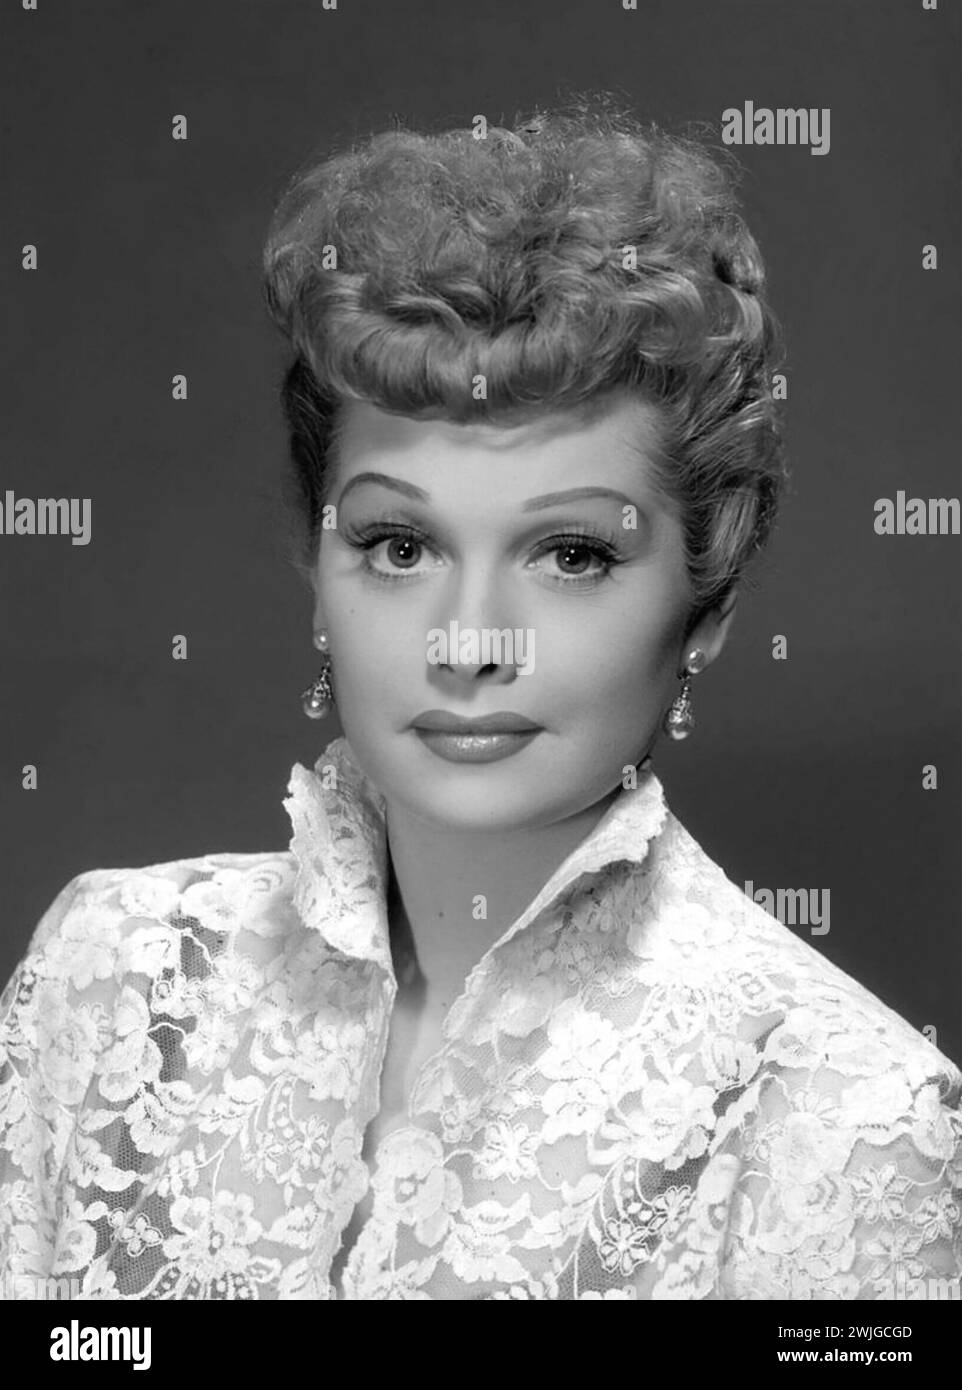 Lucille Ball. Portrait de l'actrice et comédienne américaine Lucille désirée Ball (1911-1989), toujours tiré de I Love Lucy épisode 'face to face', 1955 Banque D'Images